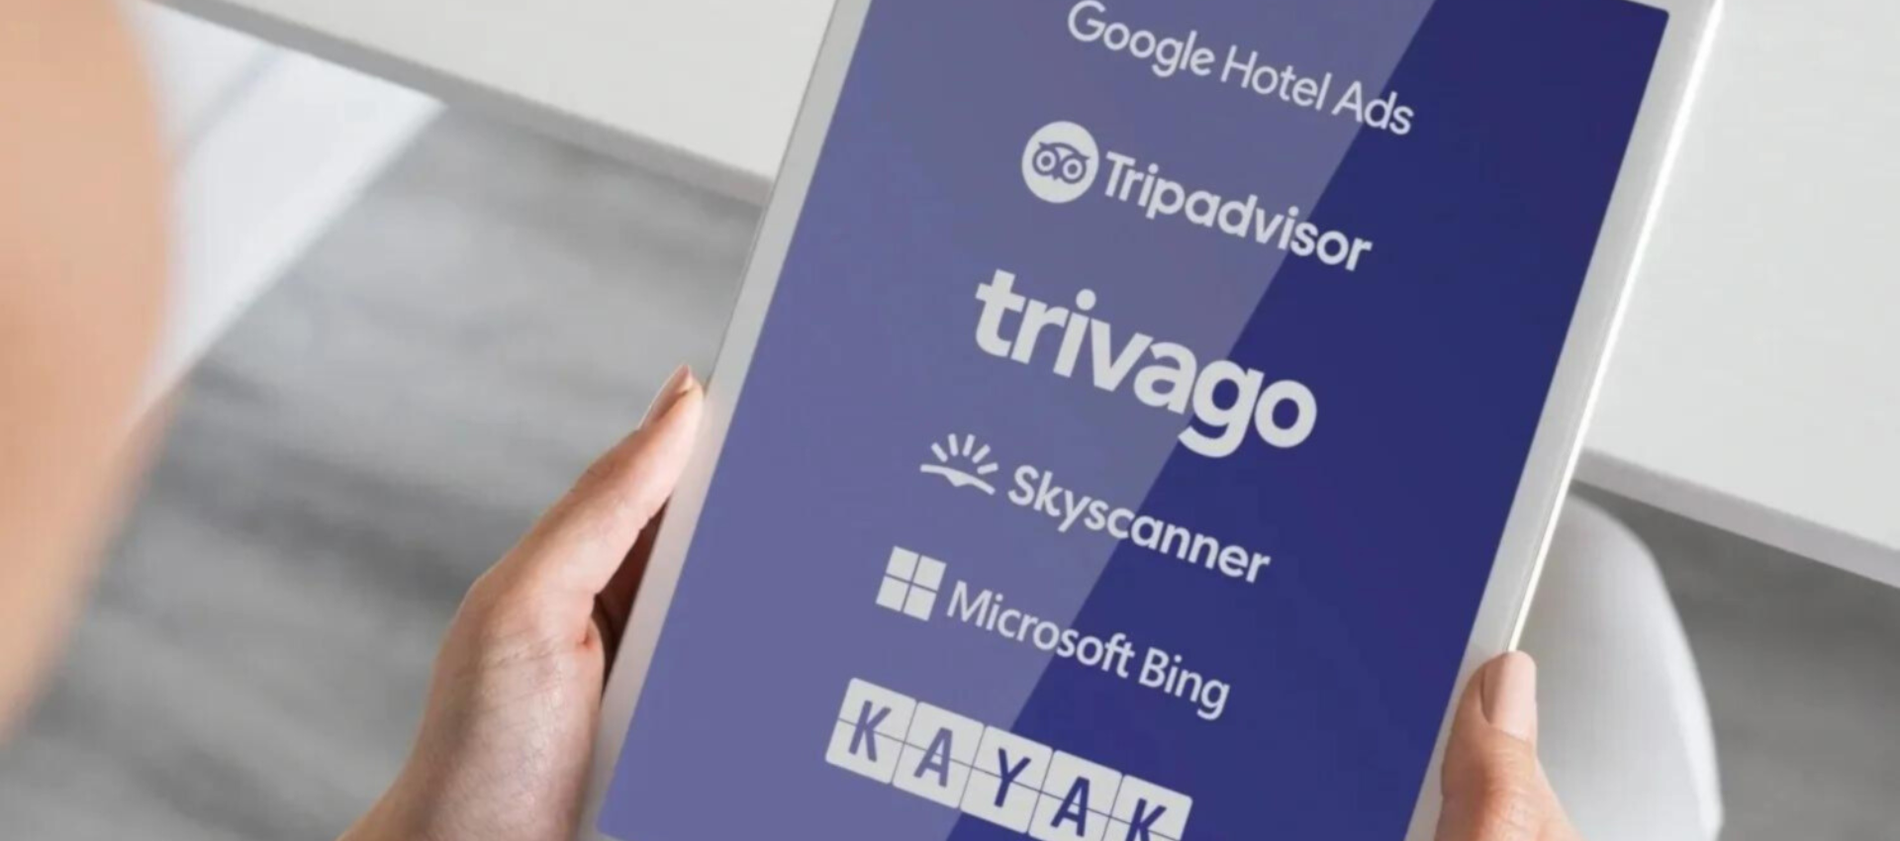 uma pessoa está segurando um tablet com o logotipo de google hotel ads